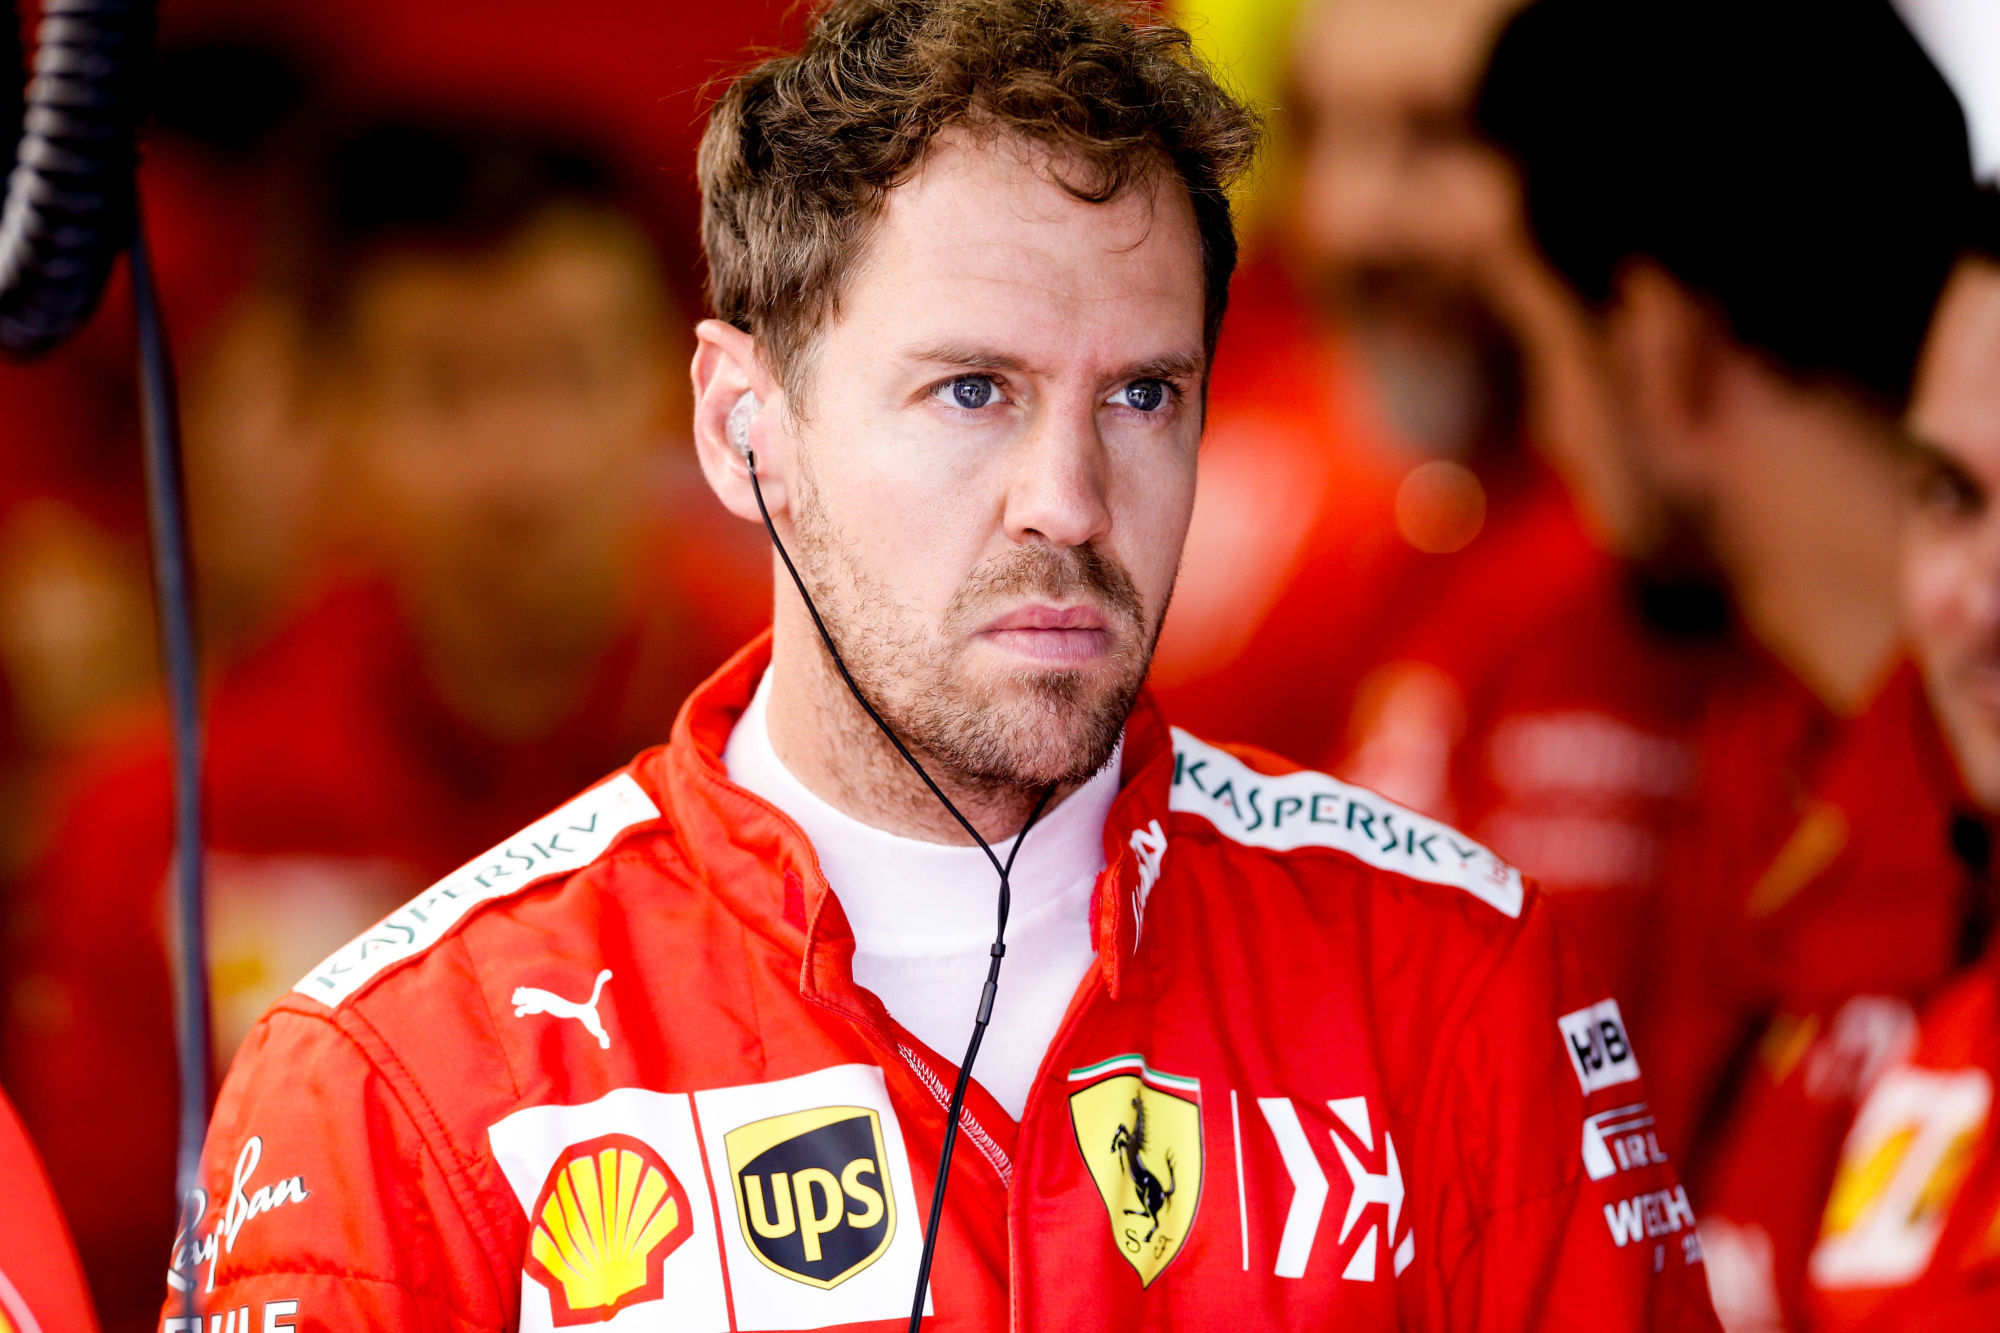 Sebastian Vettel (GER, Scuderia Ferrari Mission Winnow)
Photo by Icon Sport